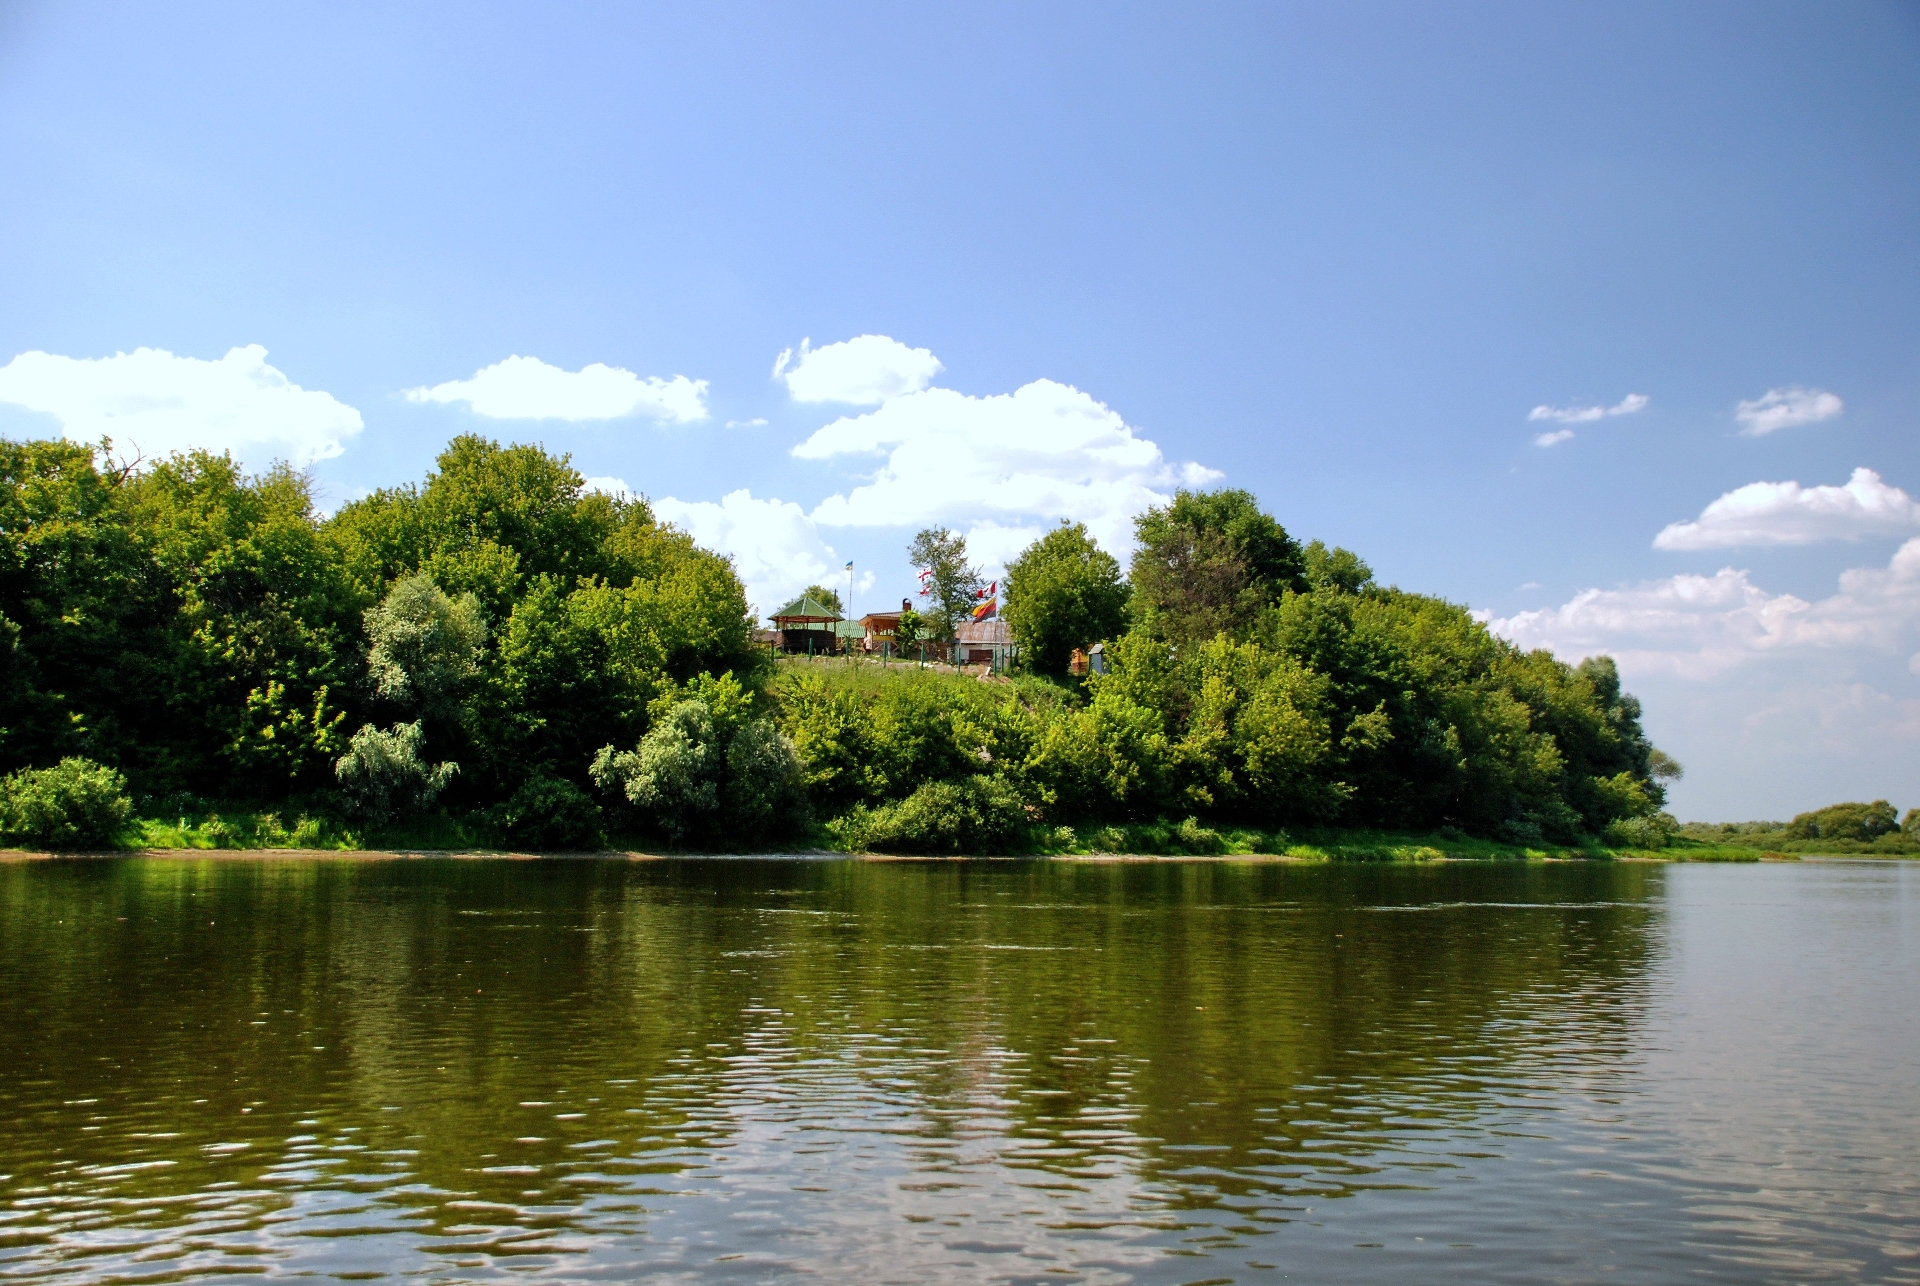 Фото 0: Река Десна